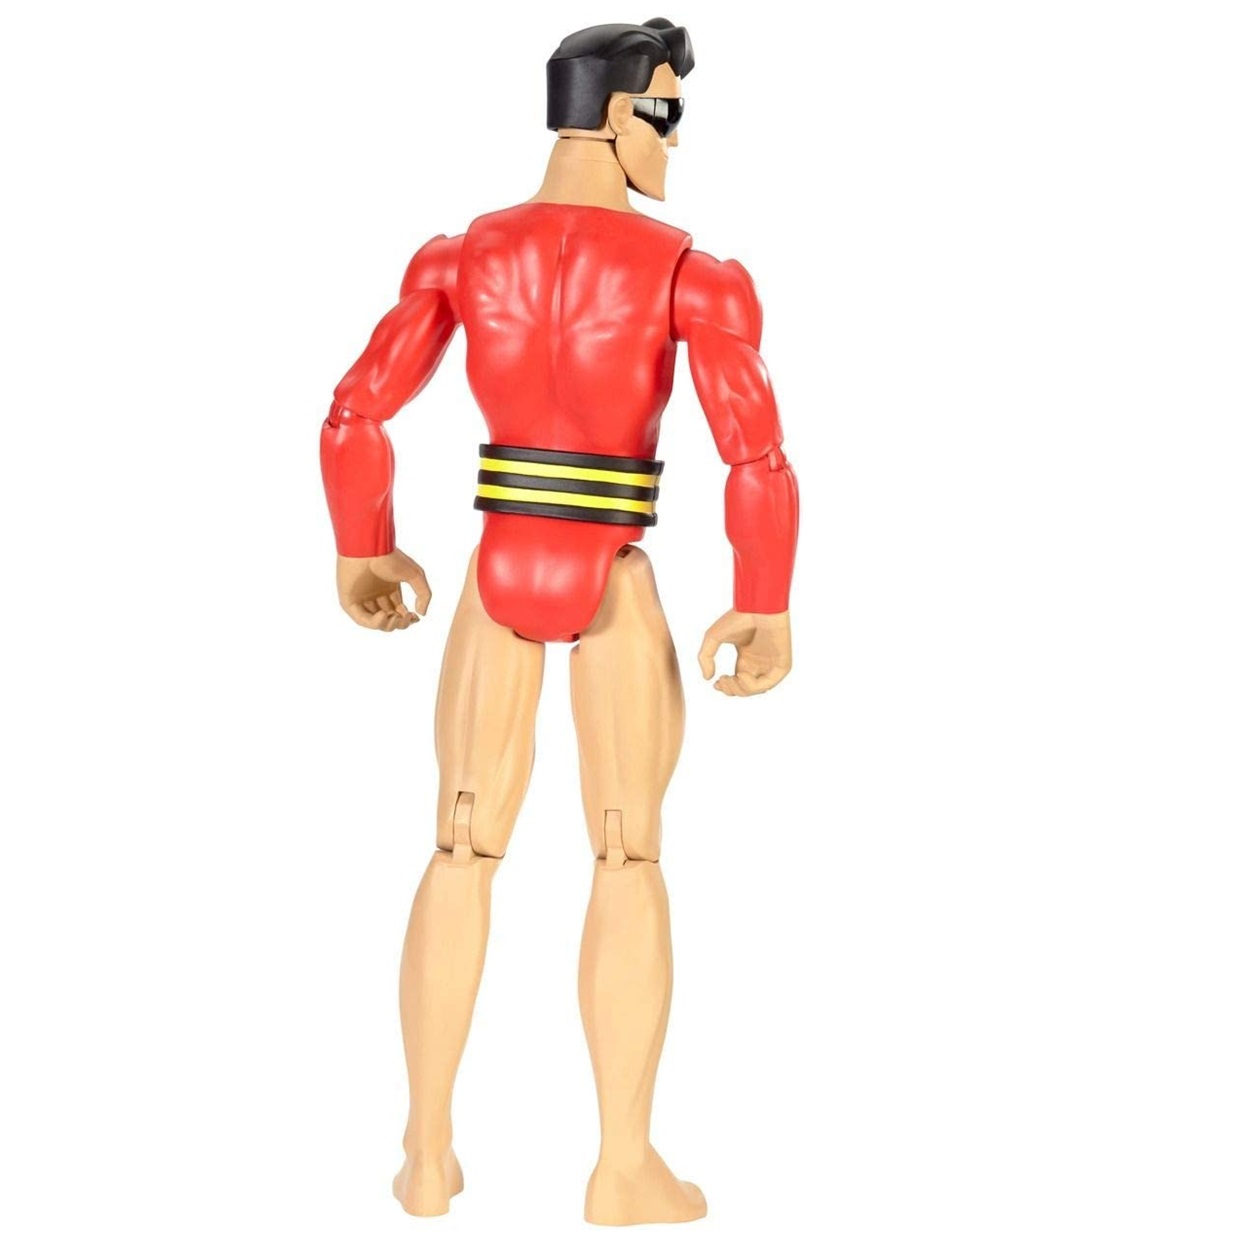 Plastic Man Figura Dc Justice League Action Mattel 12 PuLG